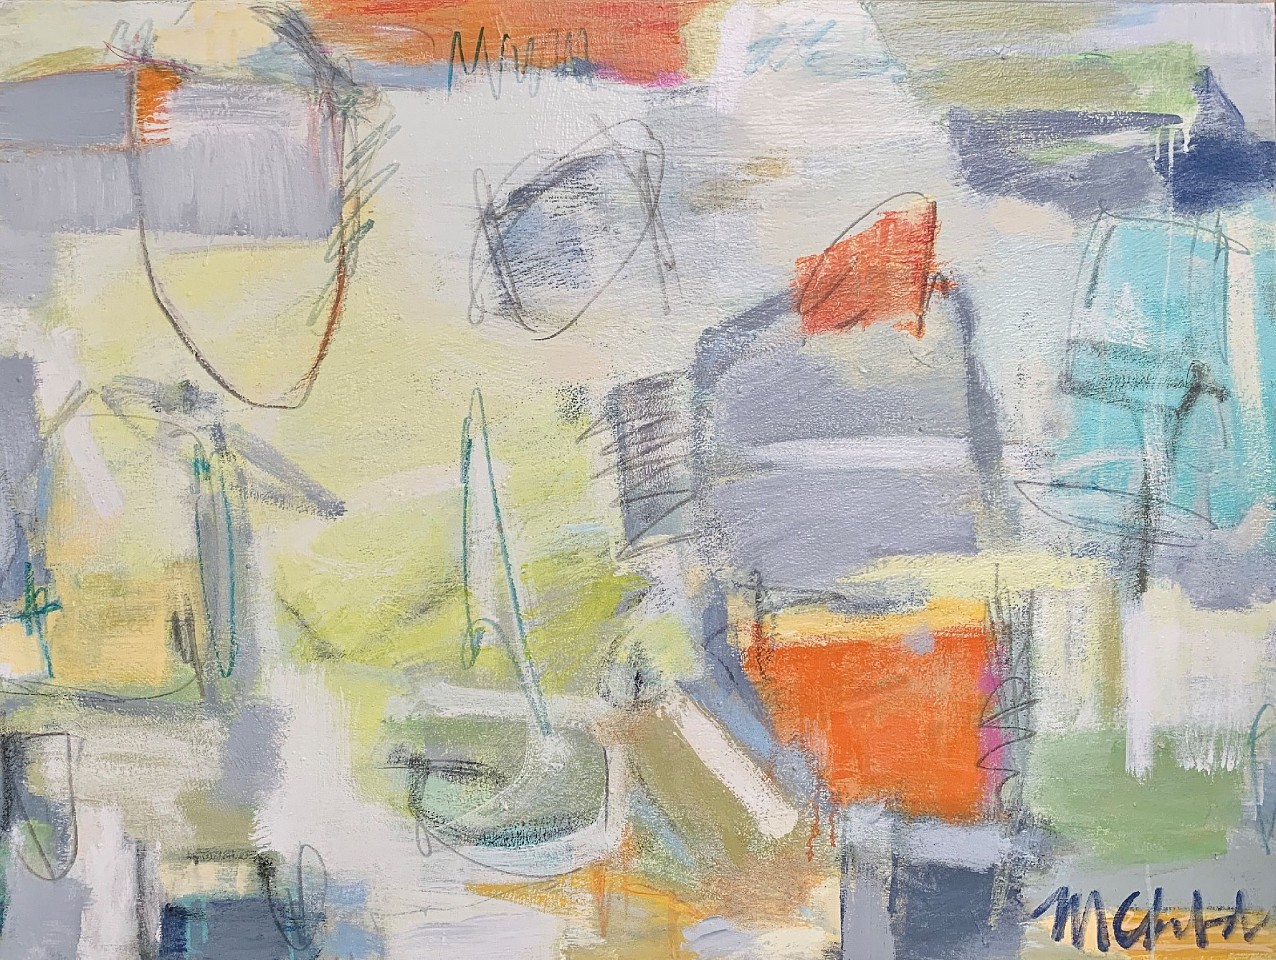 Maureen Chatfield, Beach Grass, 2020
oil on canvas, 30 x 40 in. (76.2 x 101.6 cm)
MC201109